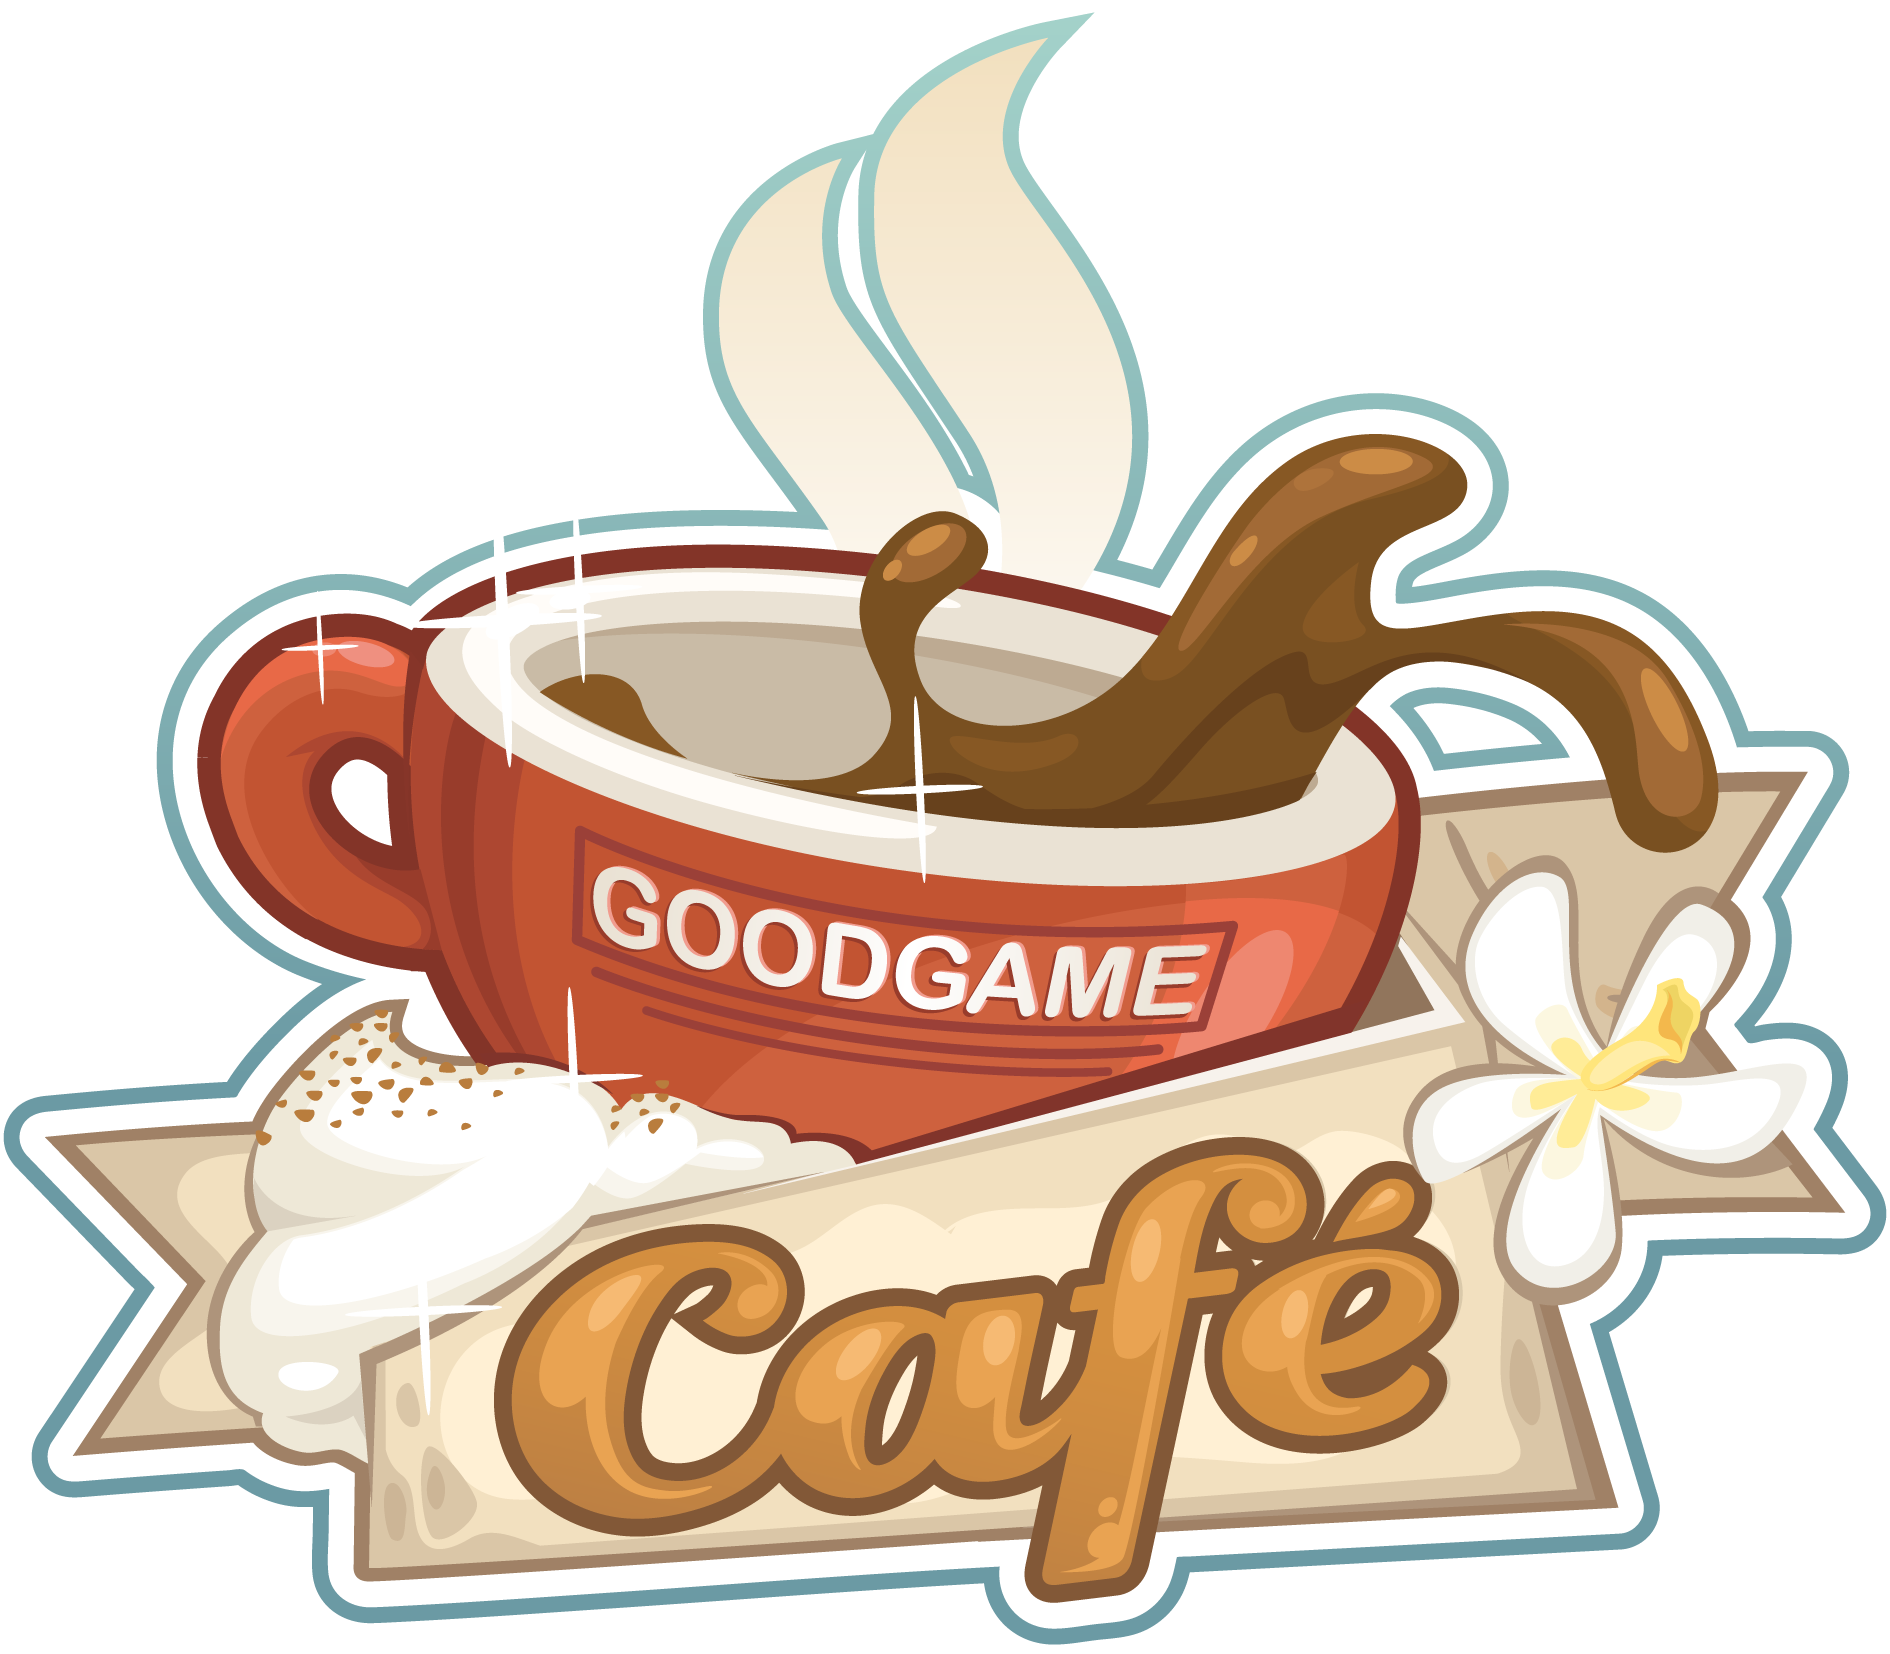 Fiche : Goodgame Café